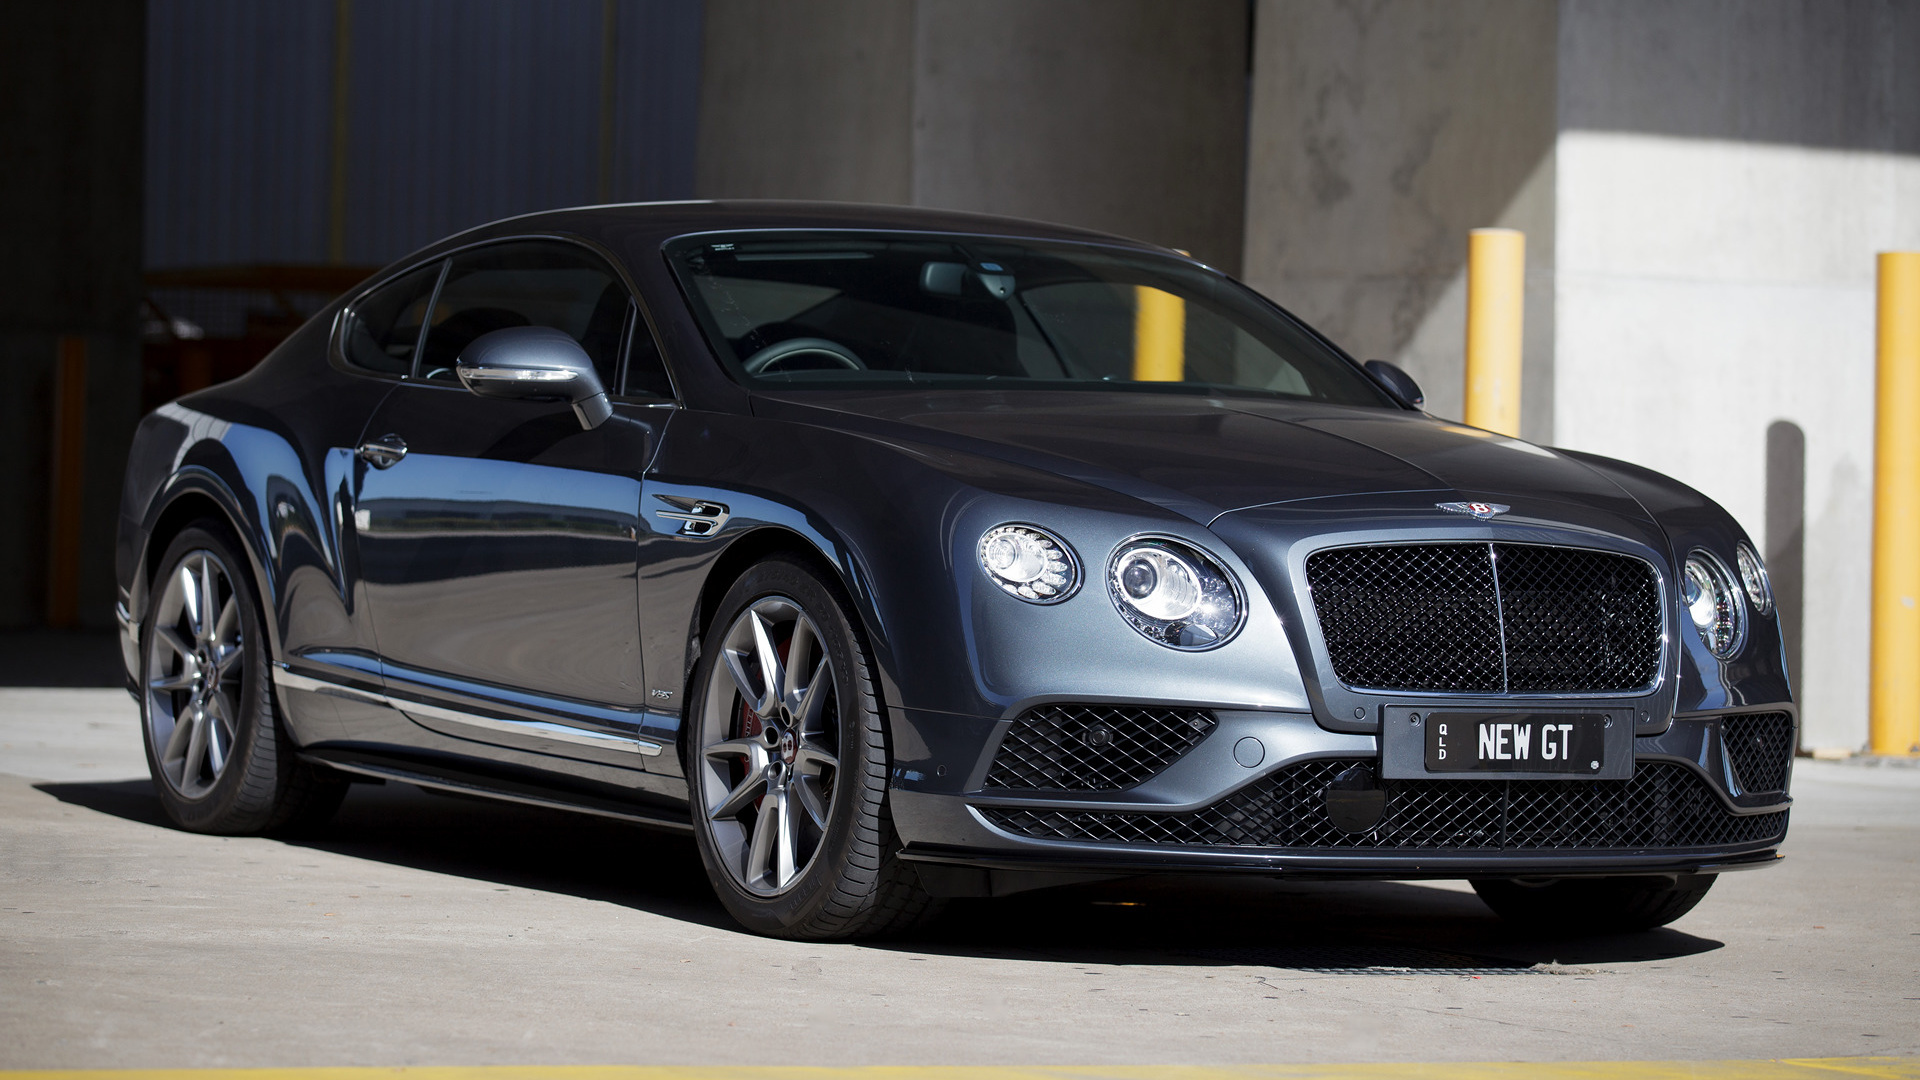 Descarga gratuita de fondo de pantalla para móvil de Bentley, Coche, Gran Turismo, Vehículos, Retroceso Rápido, Coupé, Bentley Continental Gt V8 S.